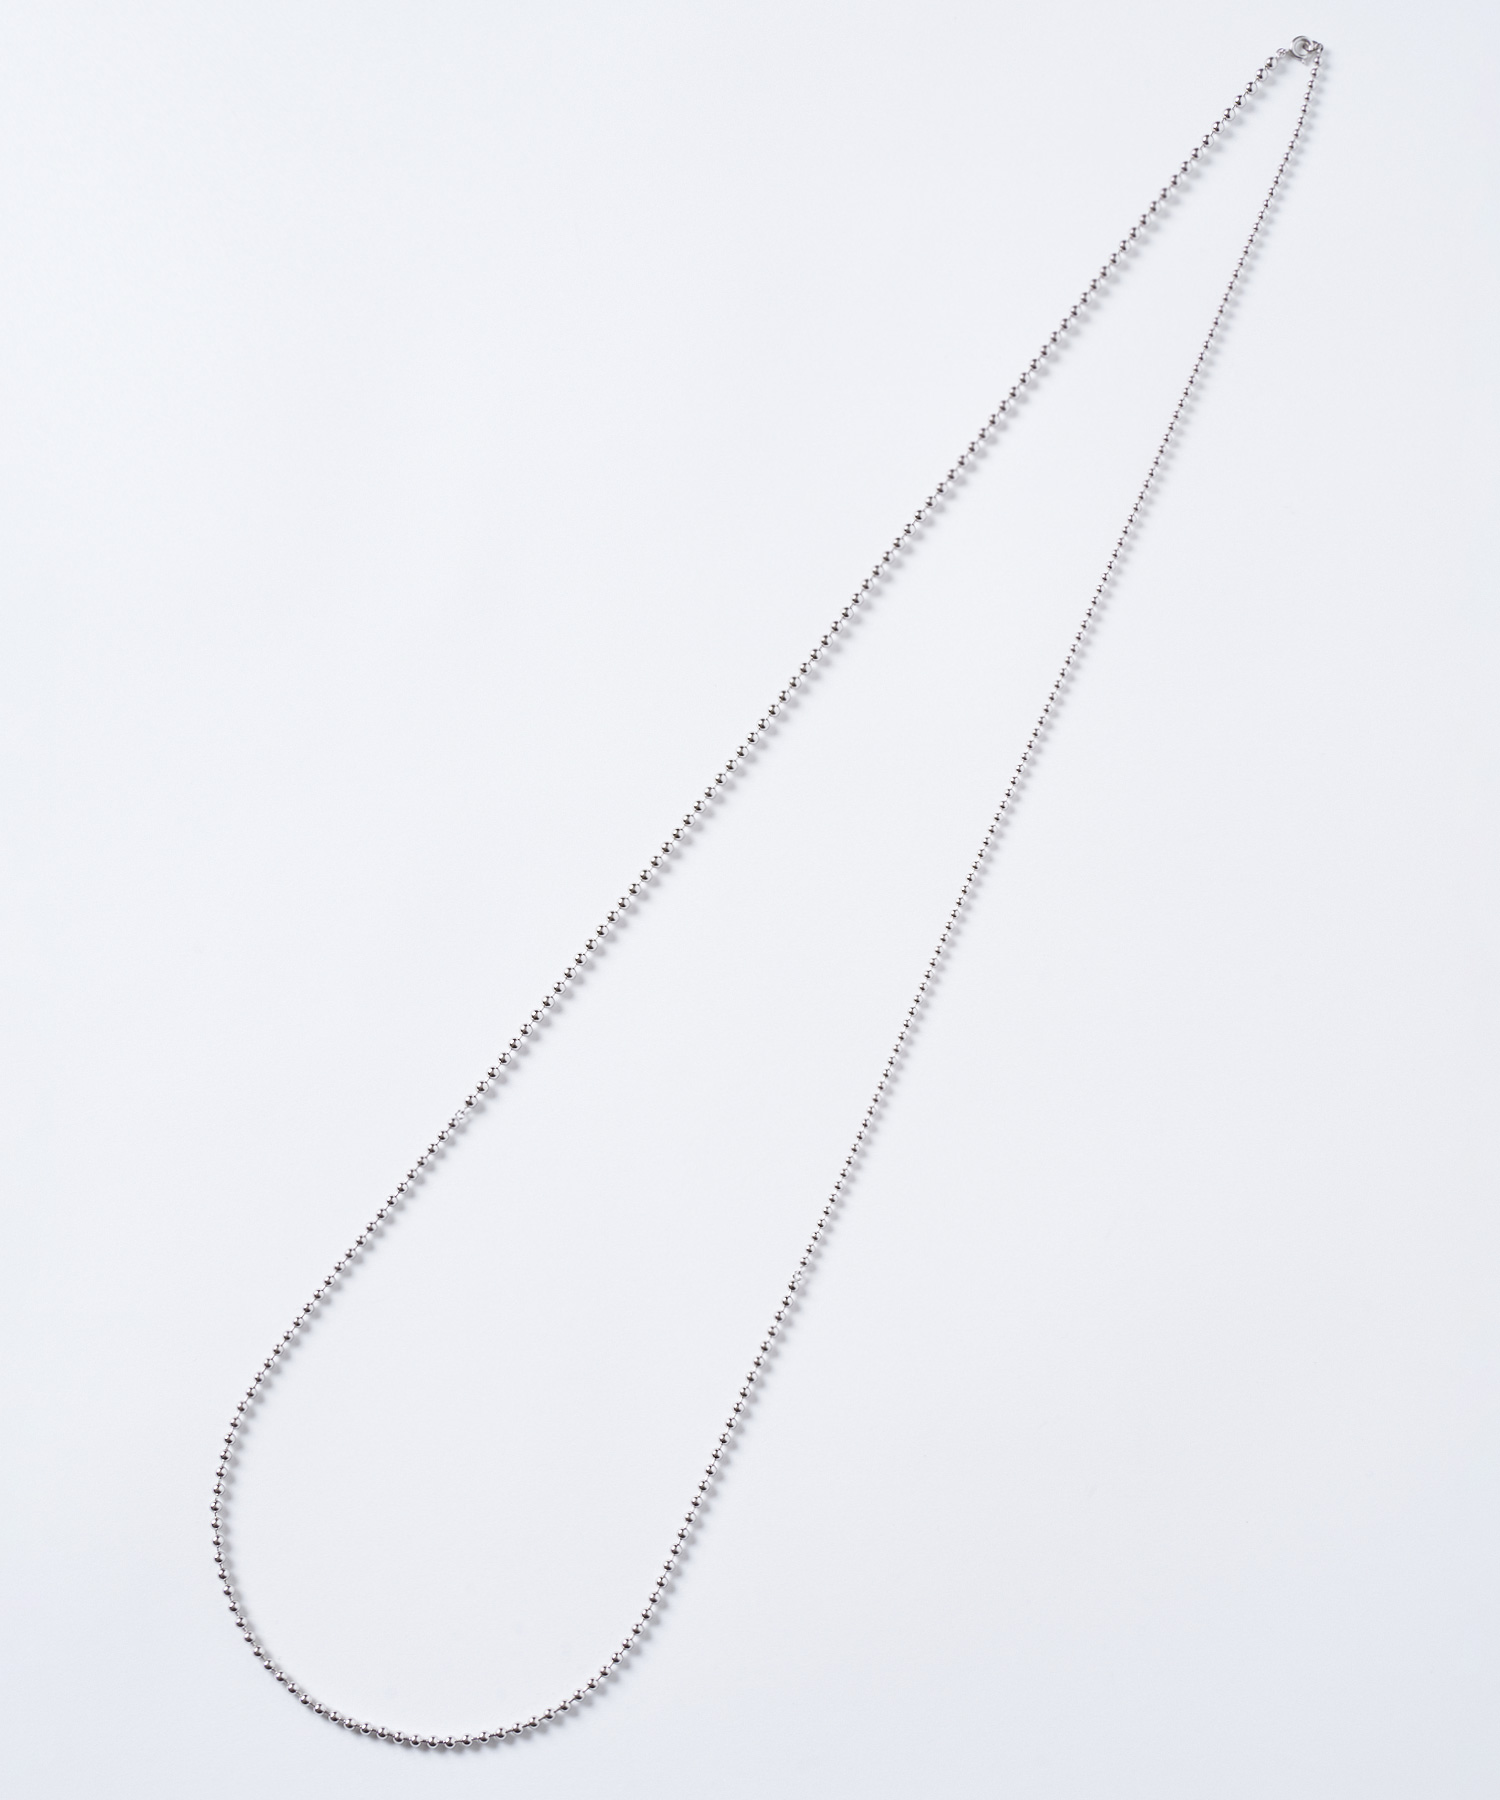 MARIHA / マリハ の「水のネックレス 」120cmのロングタイプ